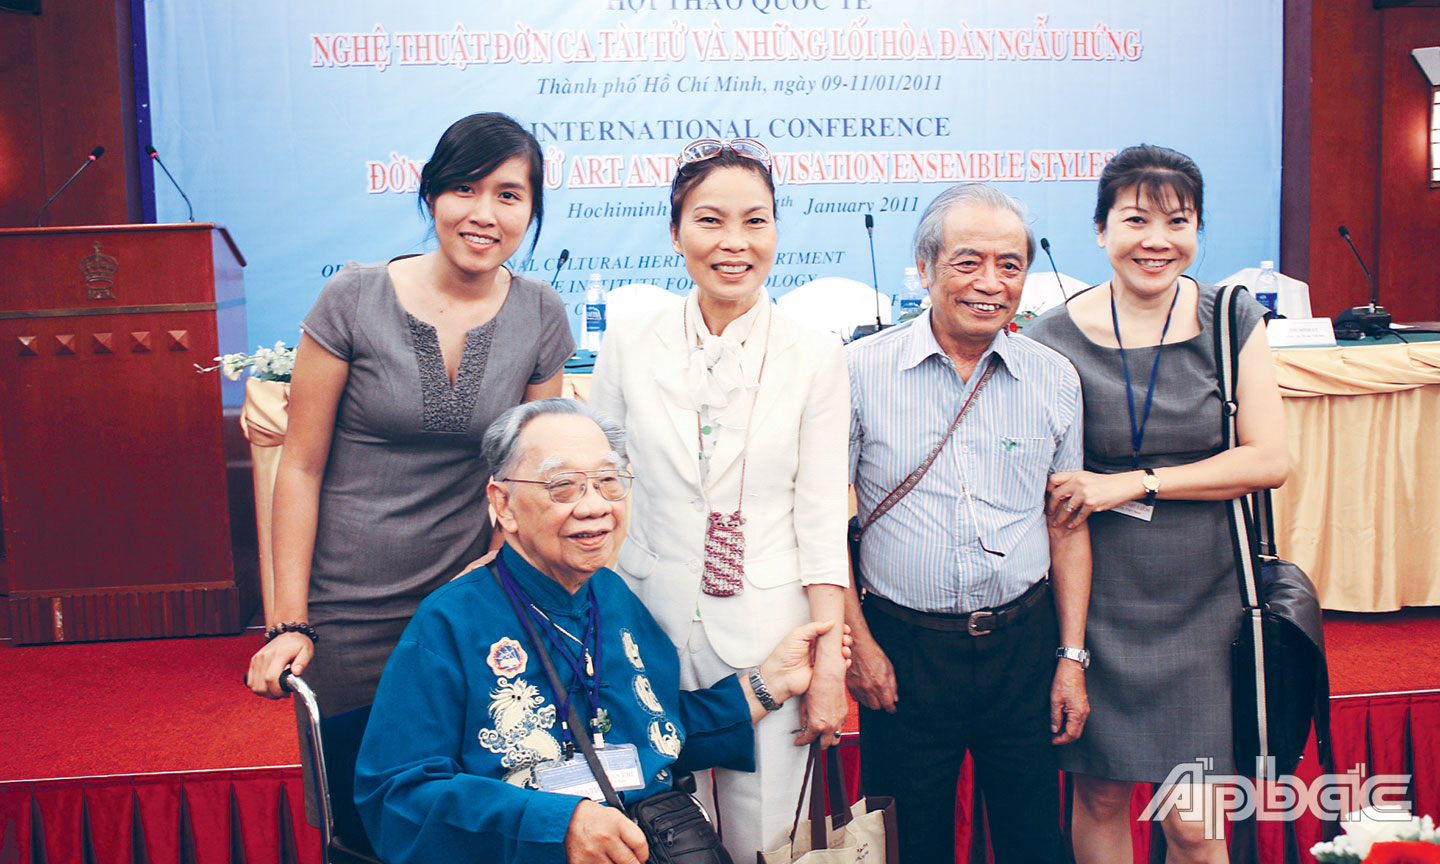 GS Trần Văn Khê tại Hội thảo quốc tế Nghệ thuật đờn ca tài tử và lối hòa đàn ngẫu hứng năm 2011.